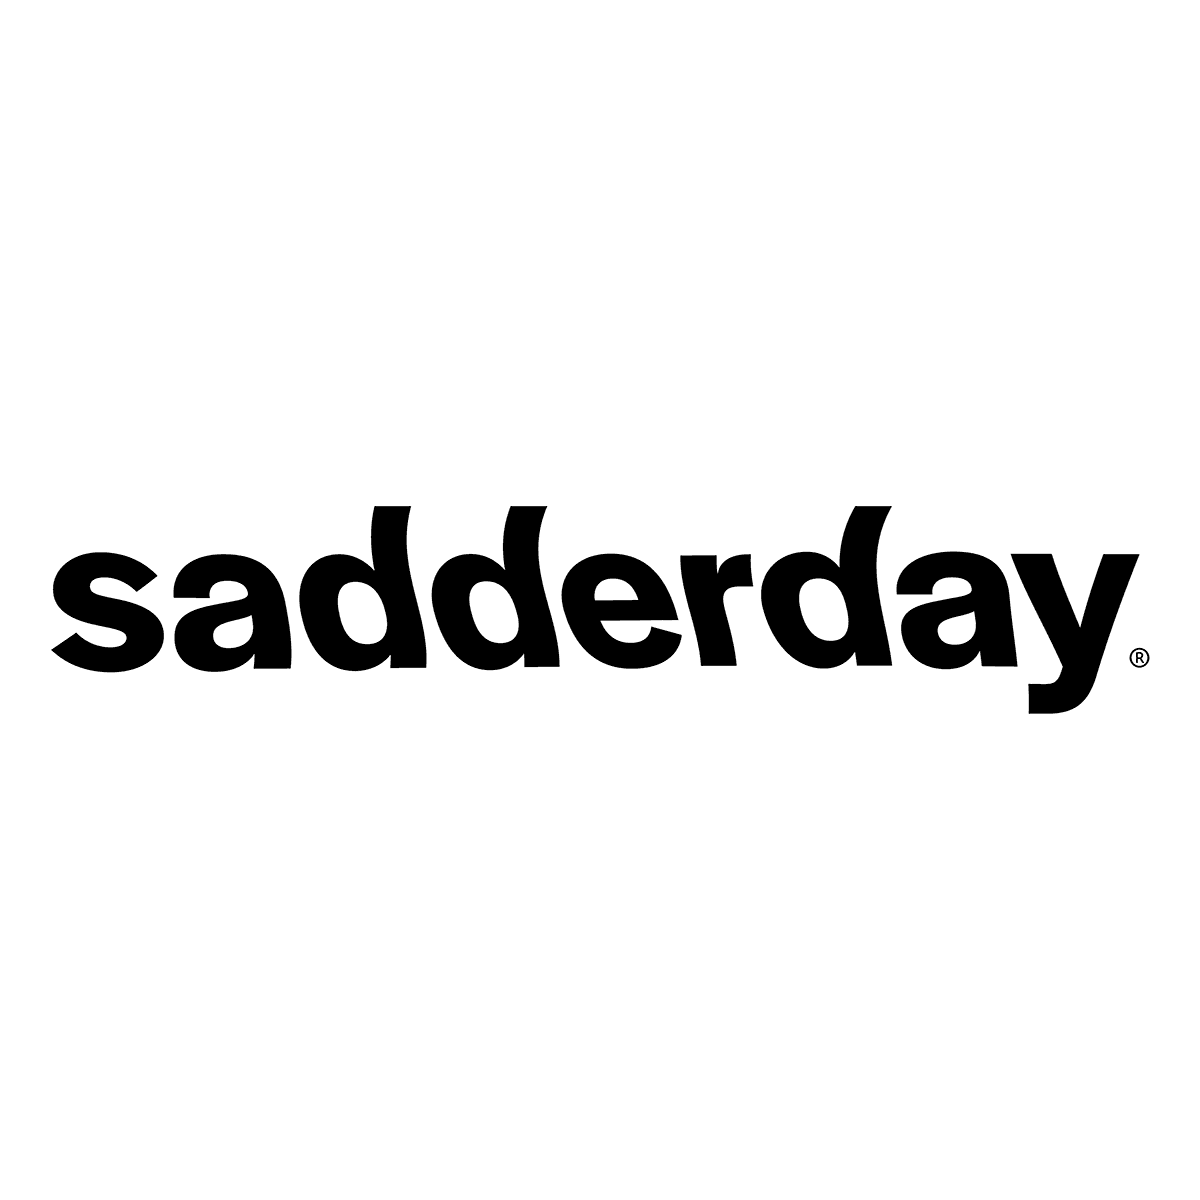 sadderday